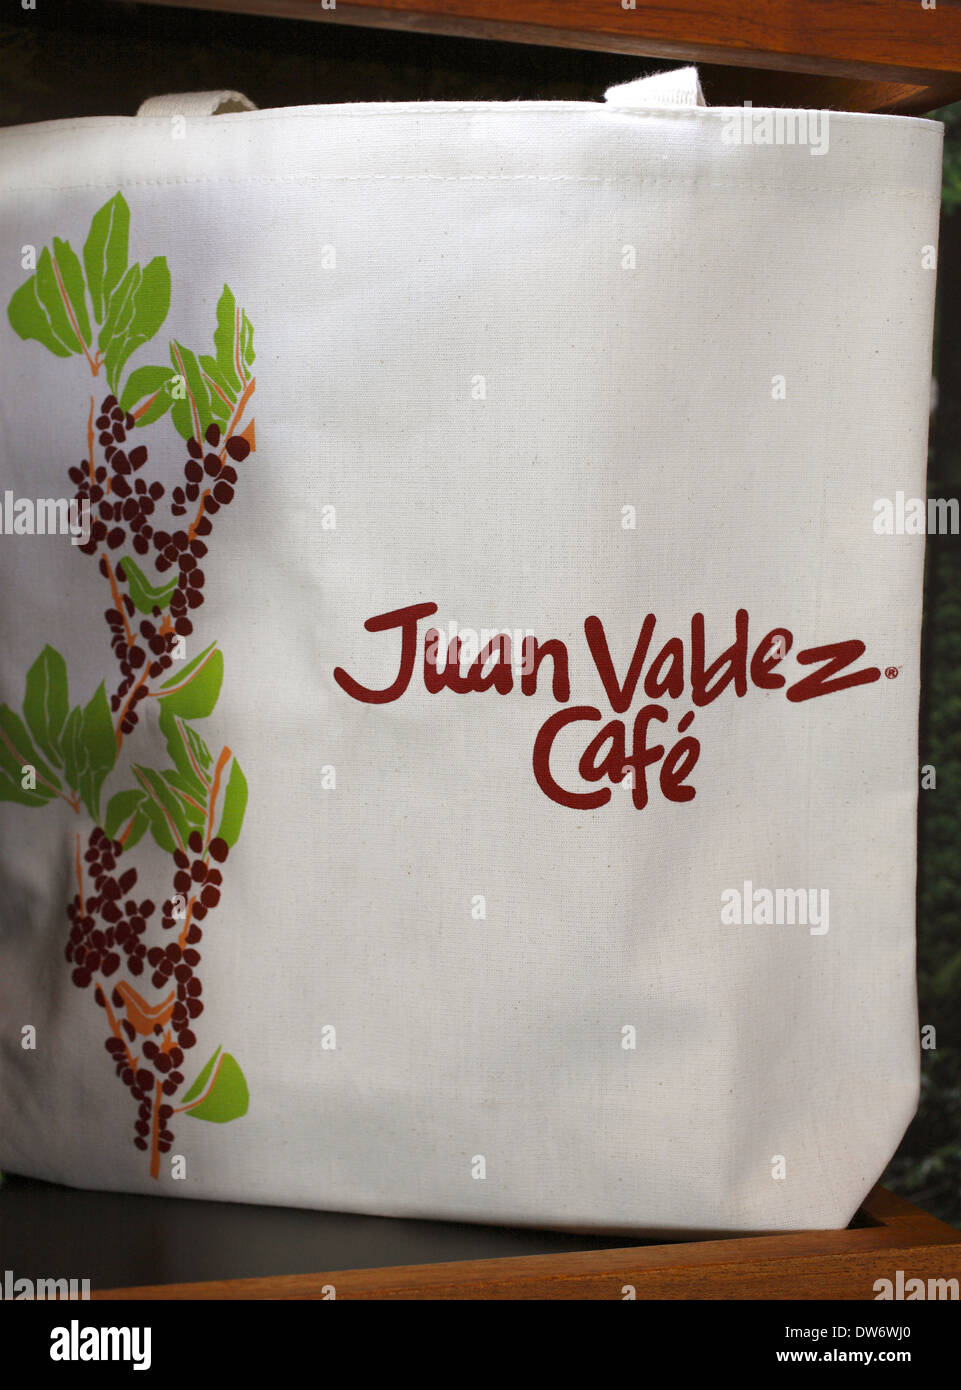 Juan Valdez Cafe bag souvenir, Colombia Stock Photo